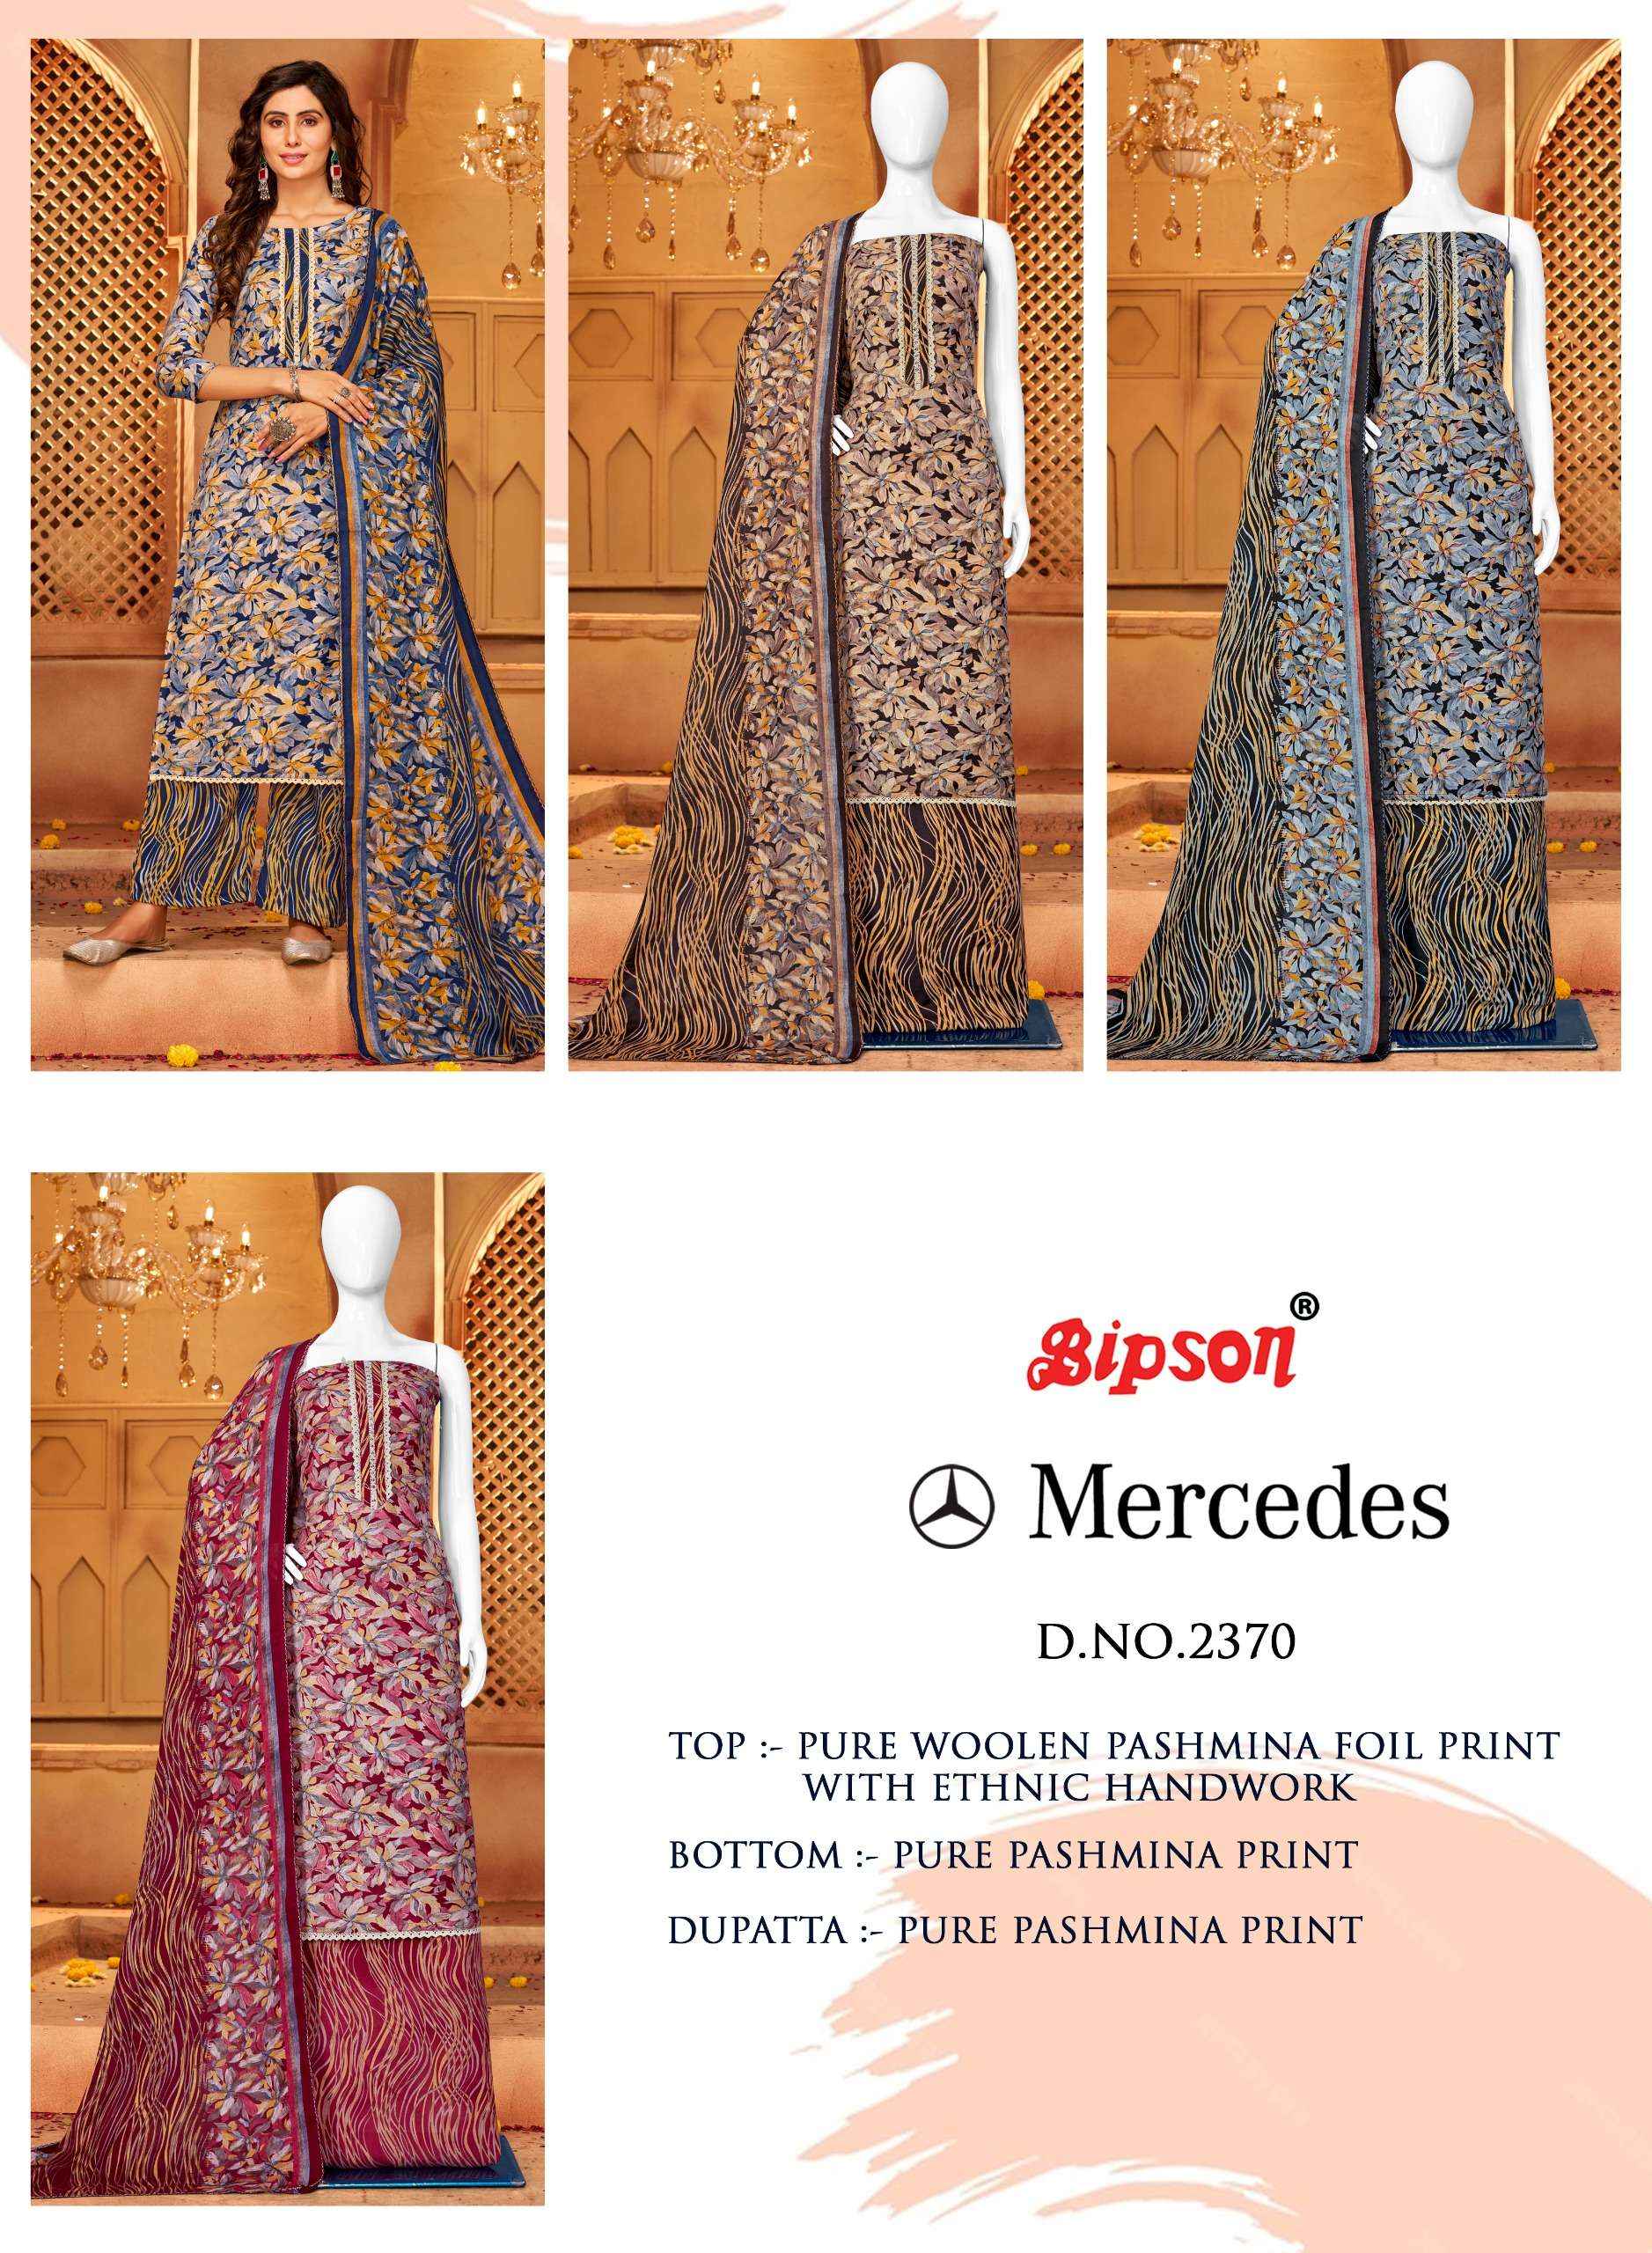 bipson mercedes 2370 colour series latest designer party wear suit wholesaler surat gujarat